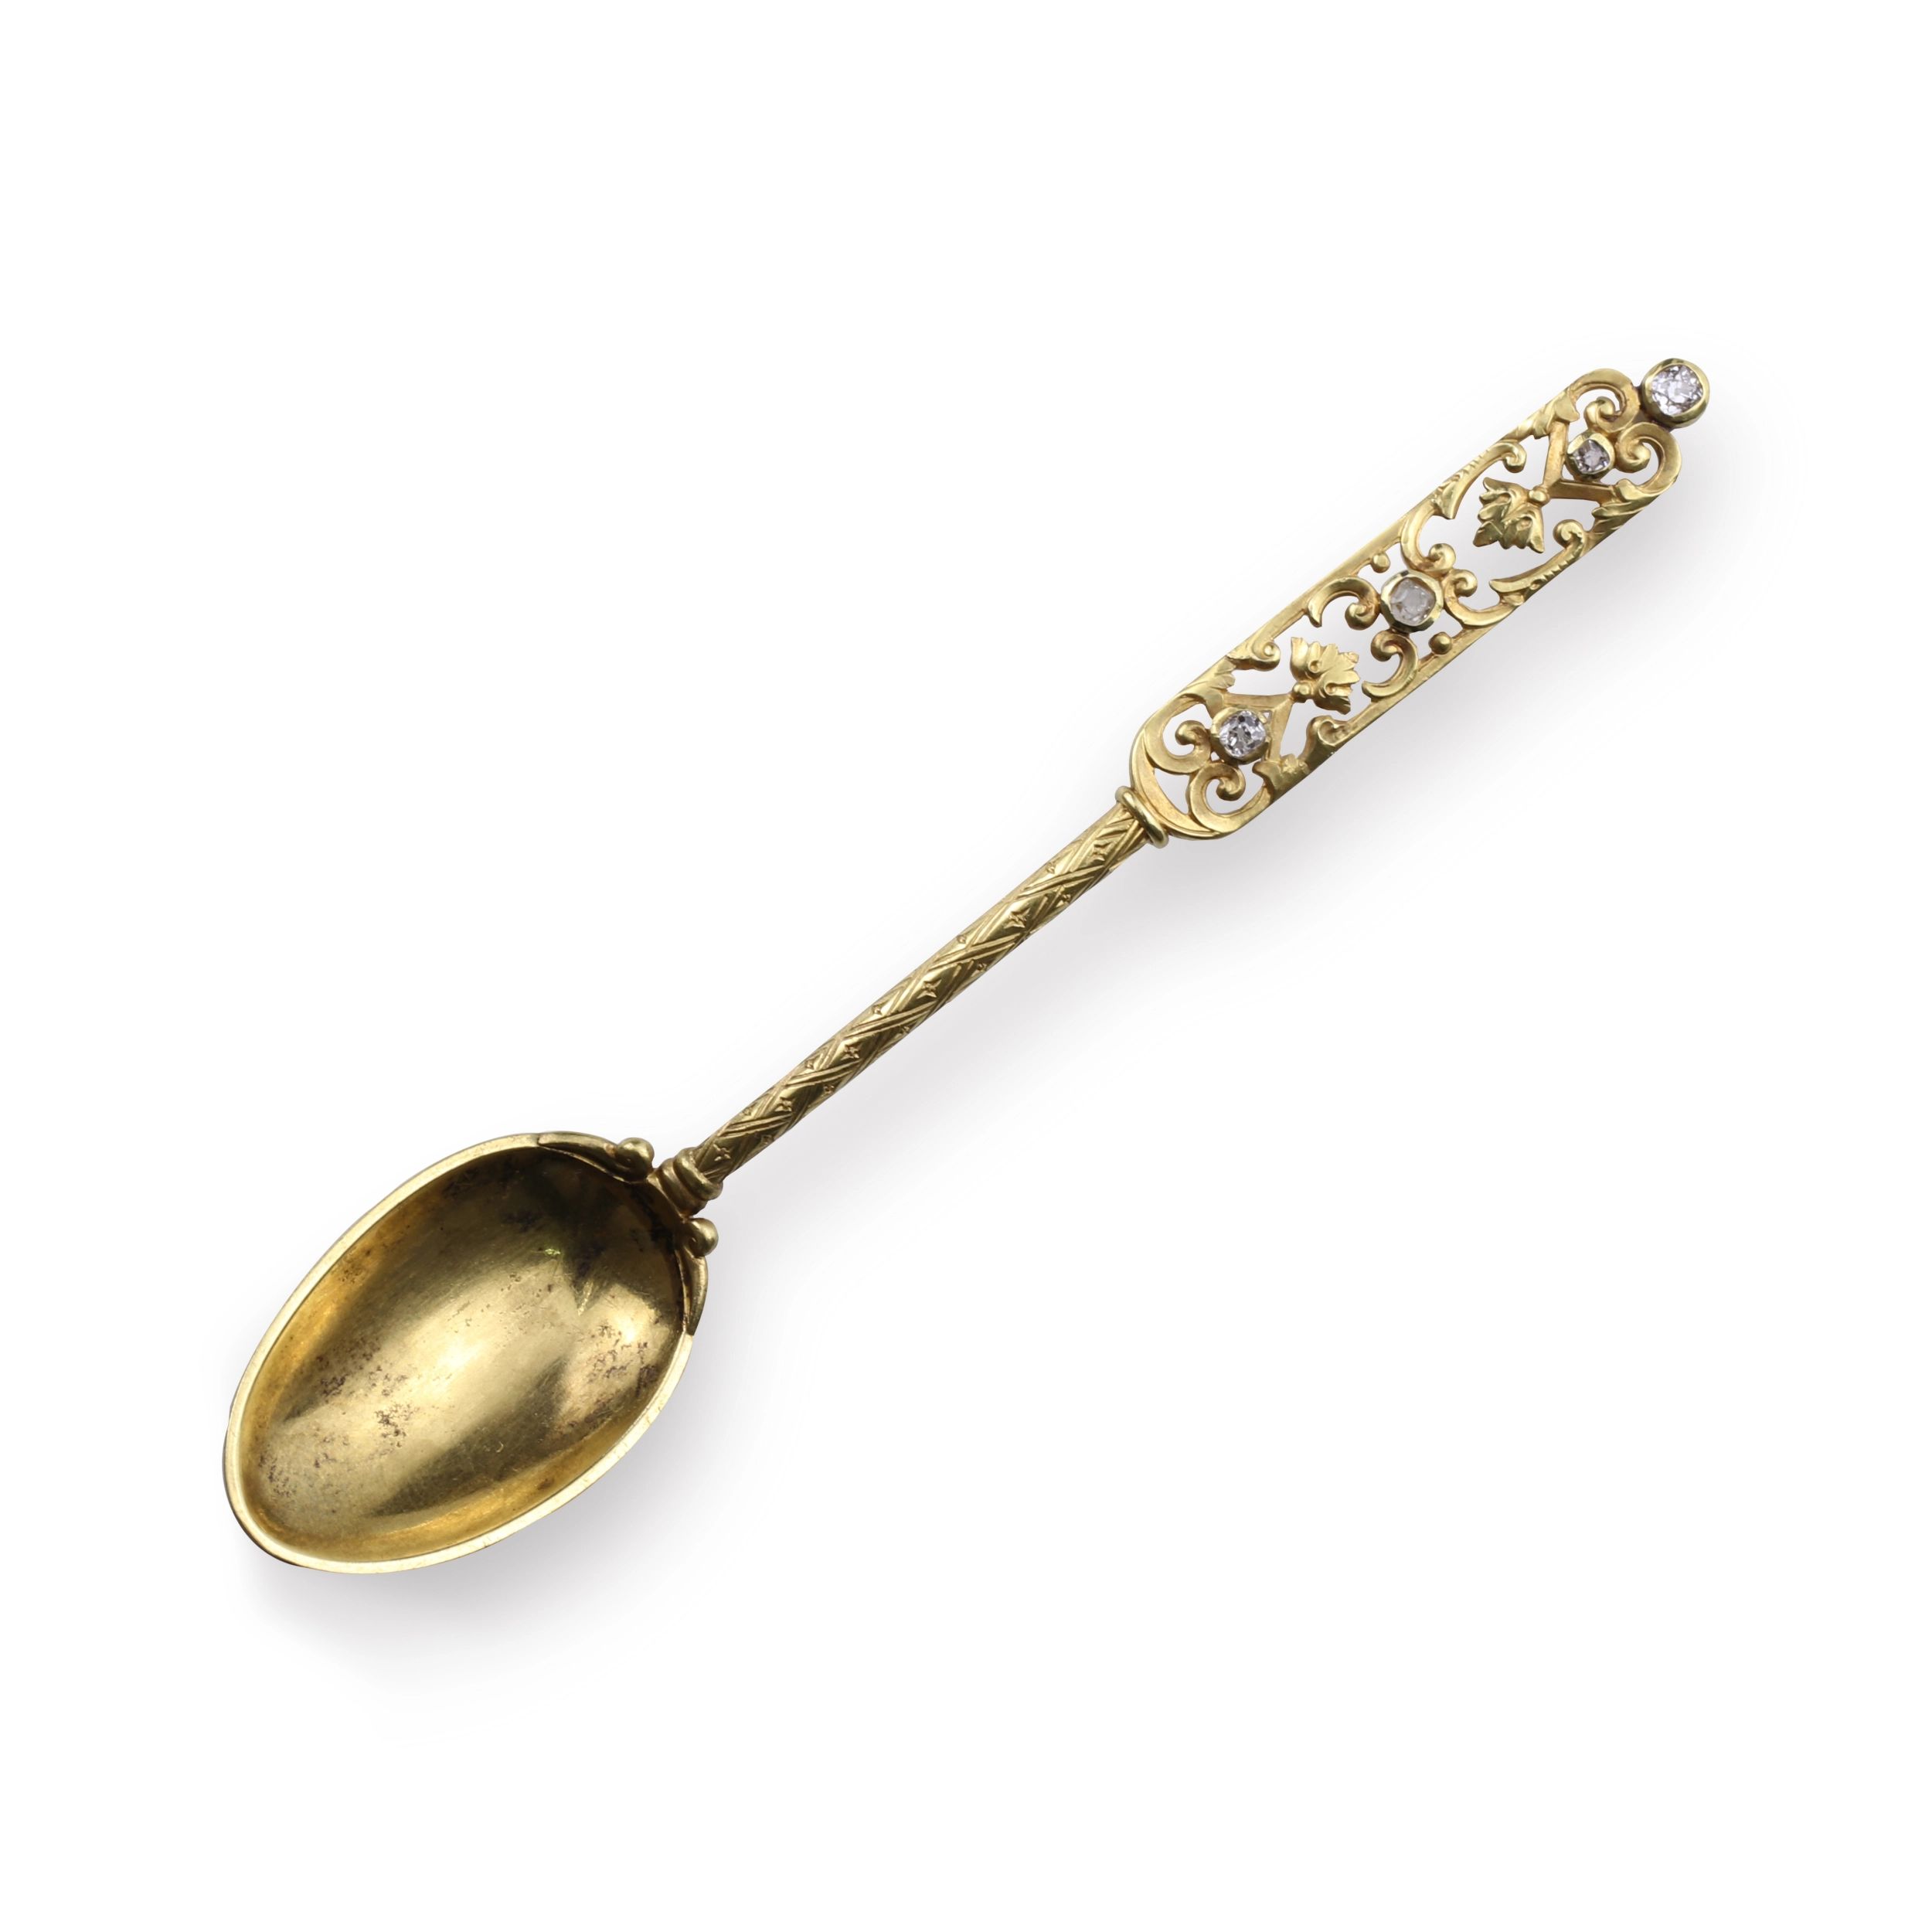 Golden-spoon-C-Faberge-master-August-Wilhelm-Holmstrom